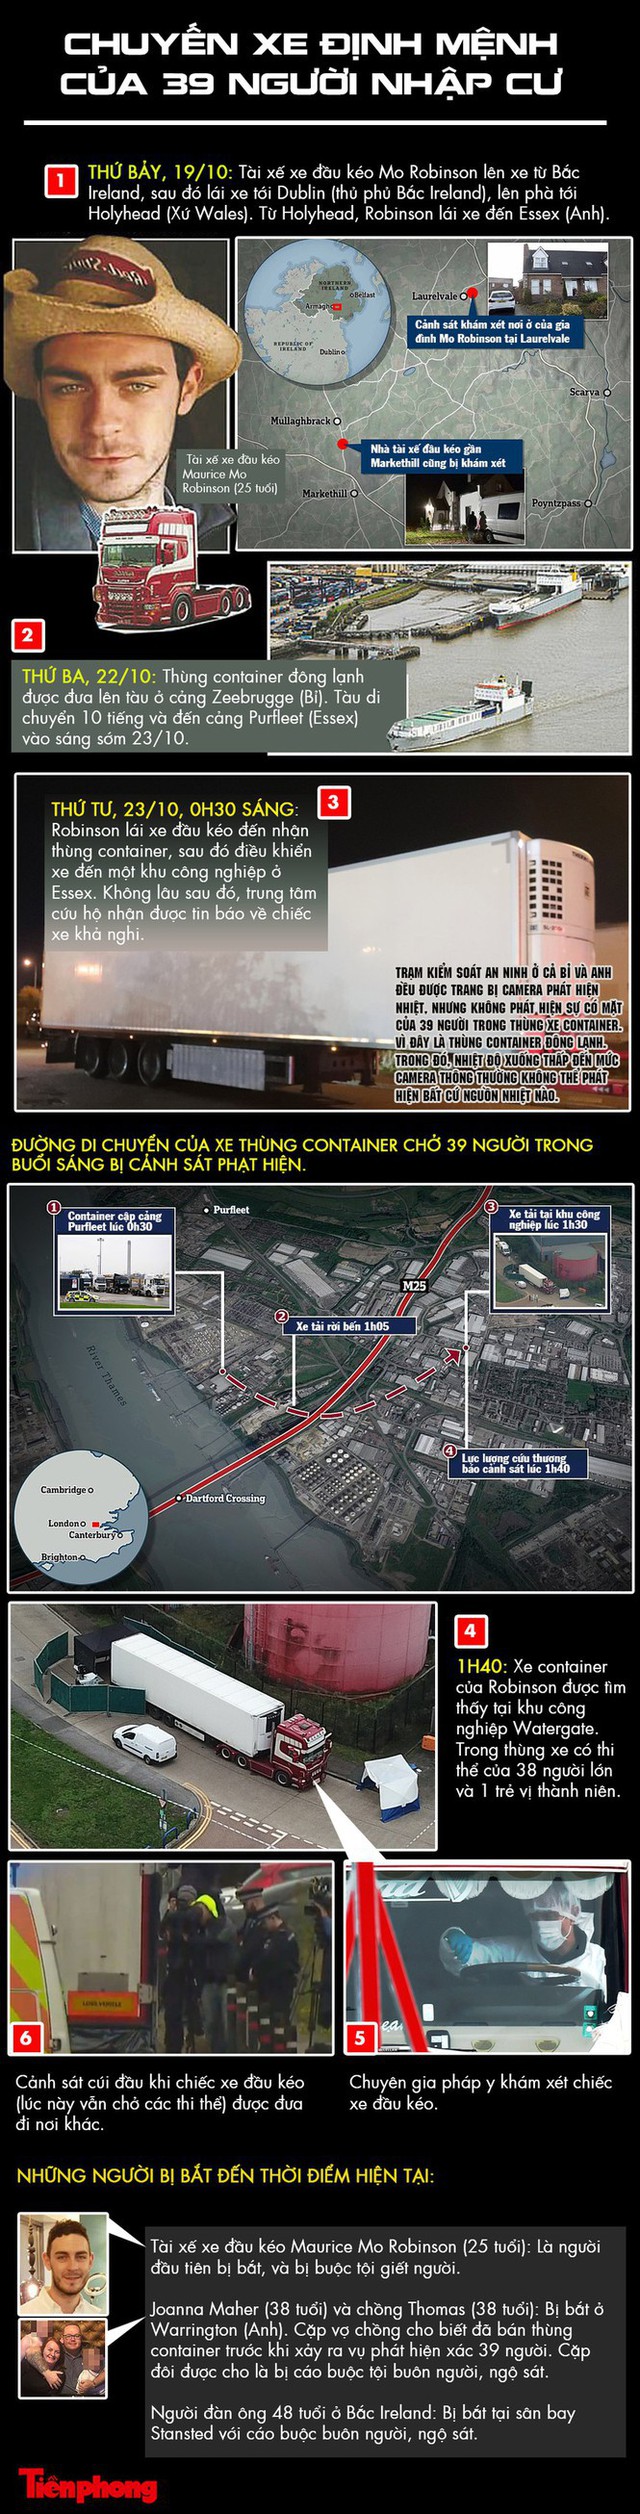 Vụ 39 người chết trên xe tải: Cảnh sát Anh tin tất cả đều là người Việt - Ảnh 2.